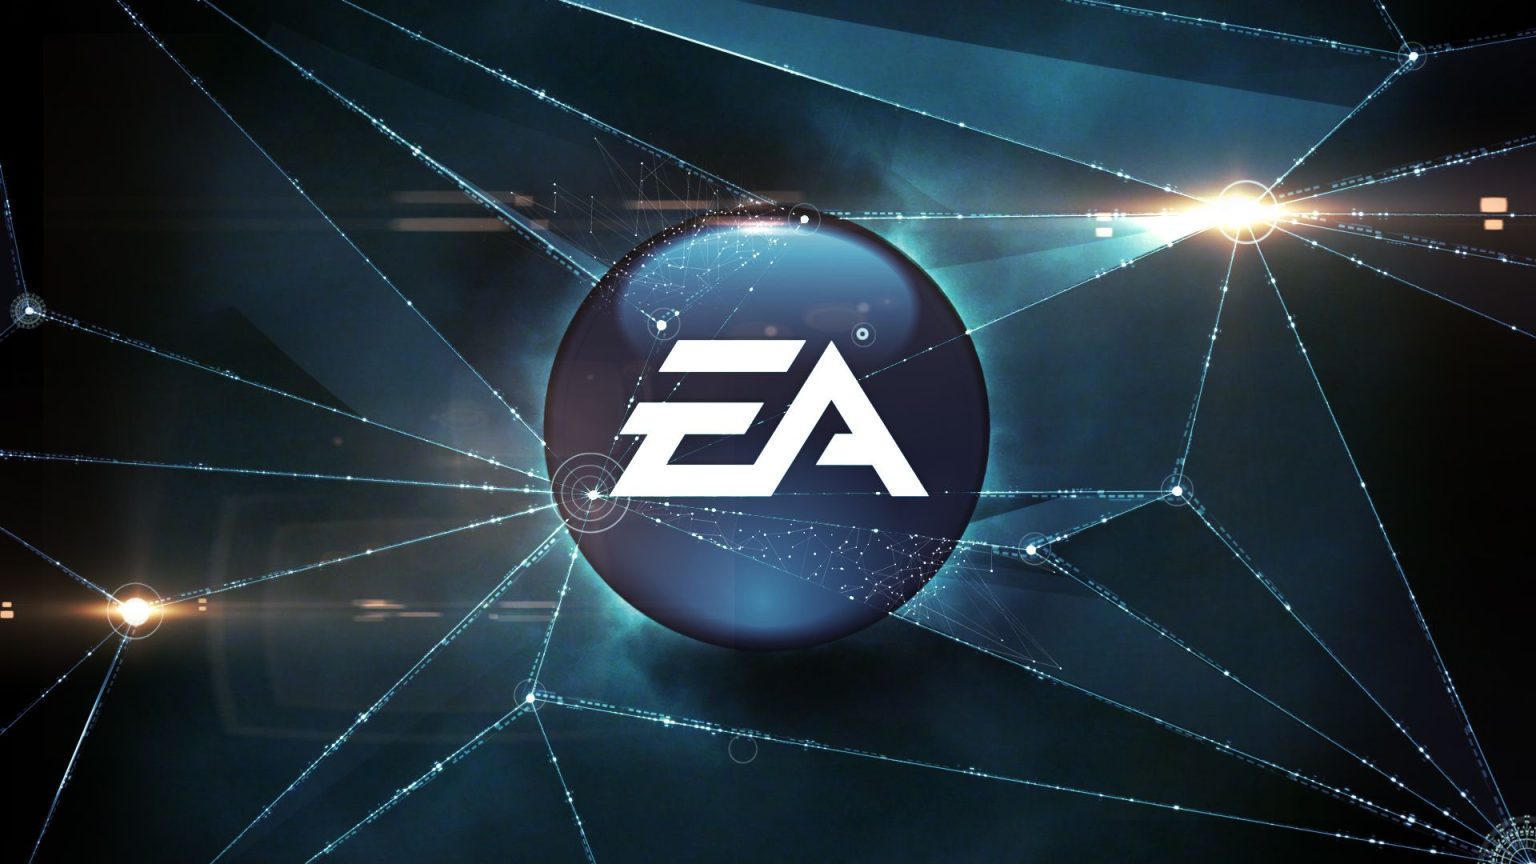 除了《星战》游戏 EA尚有3-4个新作未公布 会继续收购公司